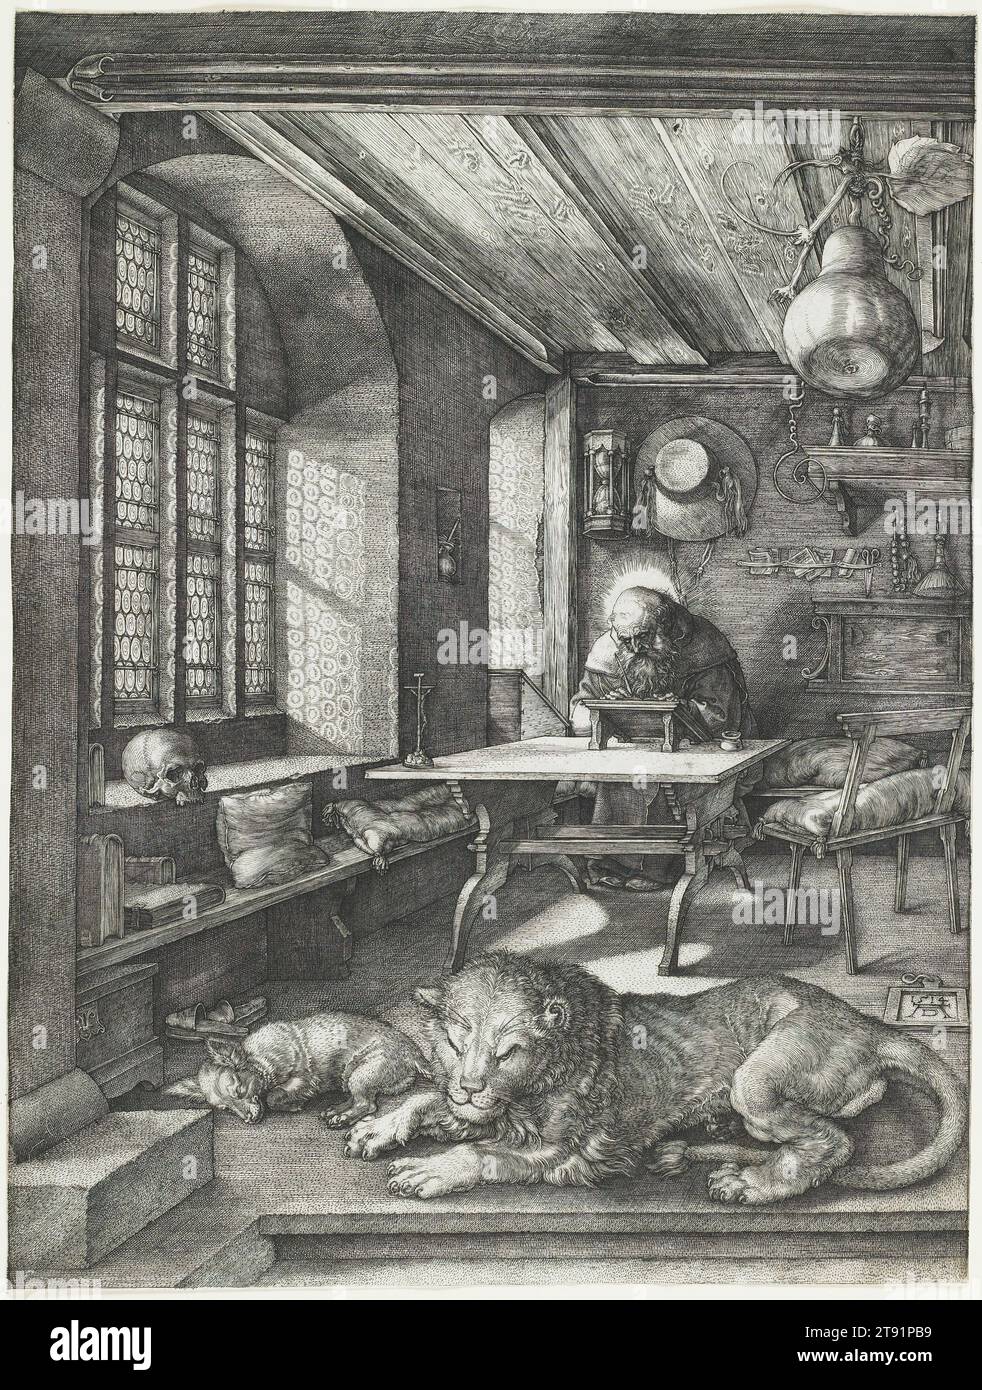 St. Jerome in seiner Studie, 1514, Albrecht Dürer, Deutsch, 1471–1528, 5/8 x 1/4 Zoll (24,6 x 18,5 cm) (Bild), Gravur, Deutschland, 16. Jahrhundert, dieser Gravur gilt seit jeher als eines der Meisterwerke Albrecht Dürers. Der gelehrte Heilige Jerome (ca. 347–420 n. Chr.) übersetzt die Bibel fleißig, während er in seinem gemütlichen Studium sitzt. Er wird von einem Löwen begleitet, der zu seinem treuen Gefährten wurde, als Jerome einen Dorn aus der Pfote nahm. Neben seiner Tierliebe war Jerome bescheiden und doch ungeheuer gelernt und in der Lage, die Bibel aus dem Griechischen und Hebräischen ins Lateinische zu übersetzen Stockfoto